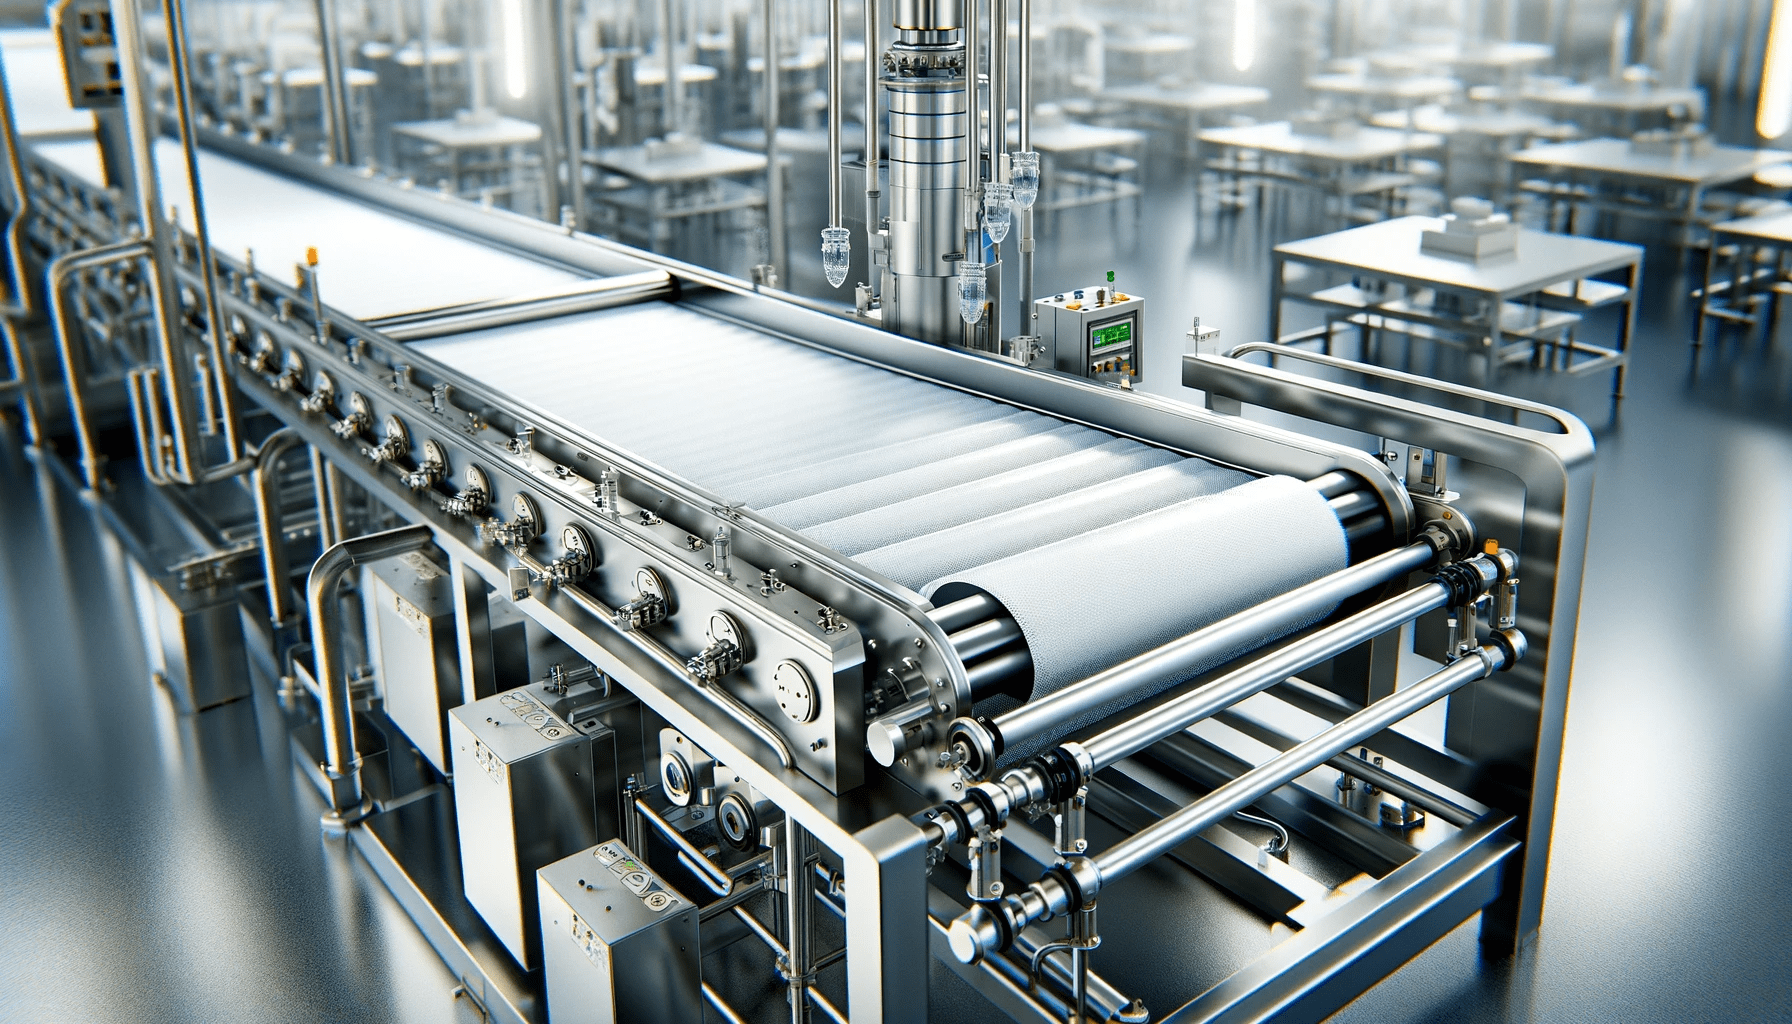 食品産業向けに設計された最新の衛生的なコンベア システム。このシステムは、洗練されたステンレス鋼構造を特徴としています。